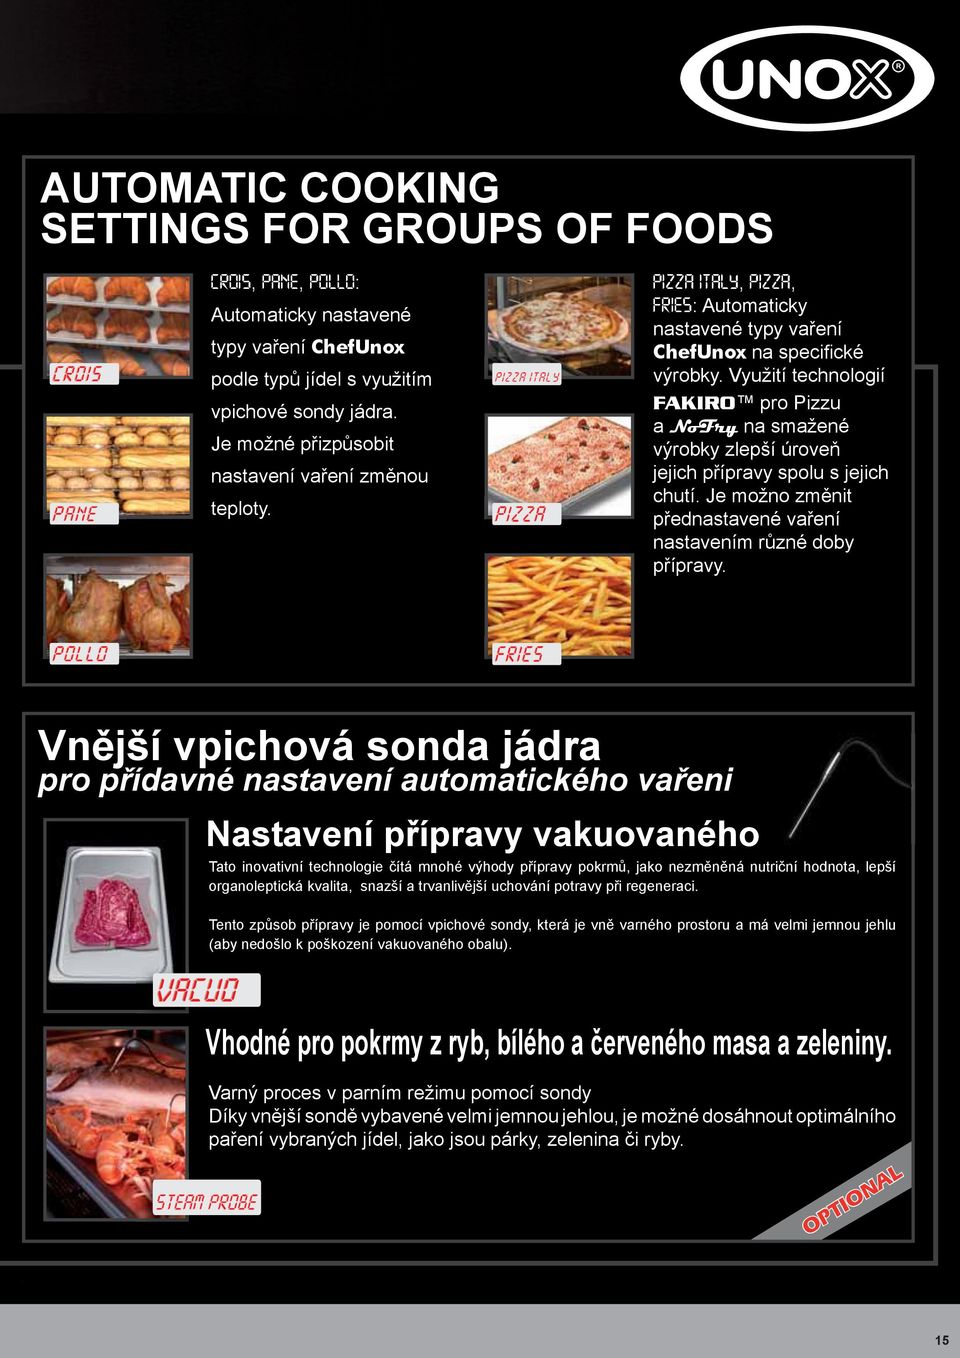 Využití technologií FAKIRO pro Pizzu a NoFry na smažené výrobky zlepší úroveň jejich přípravy spolu s jejich chutí. Je možno změnit přednastavené vaření nastavením různé doby přípravy.